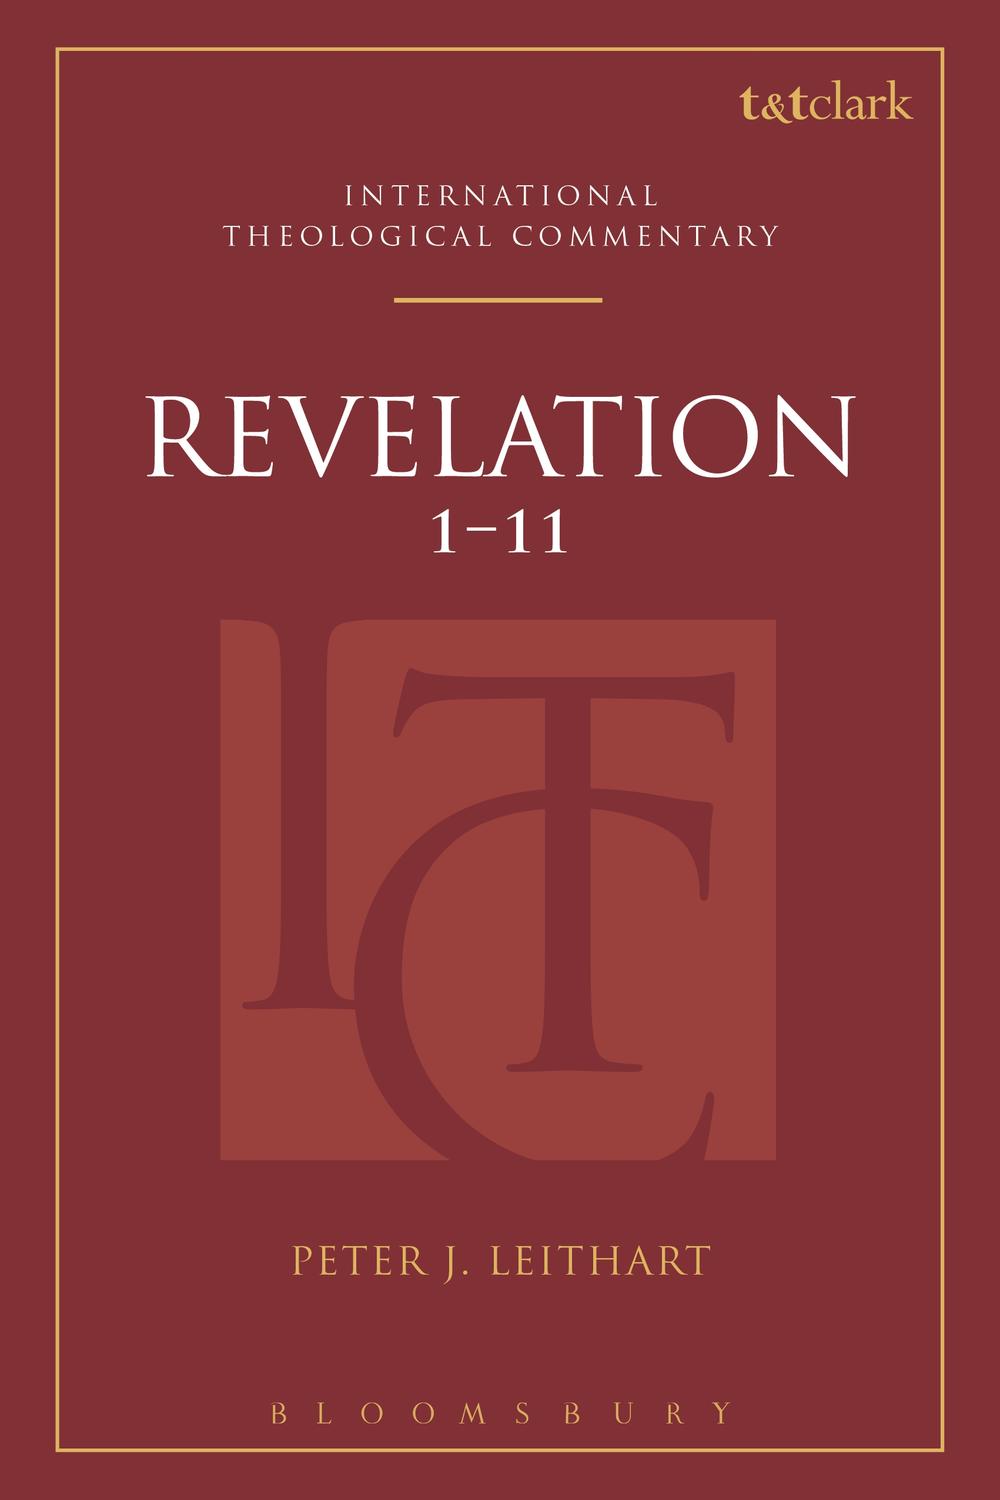 Revelation 1-11 - Peter J. Leithart